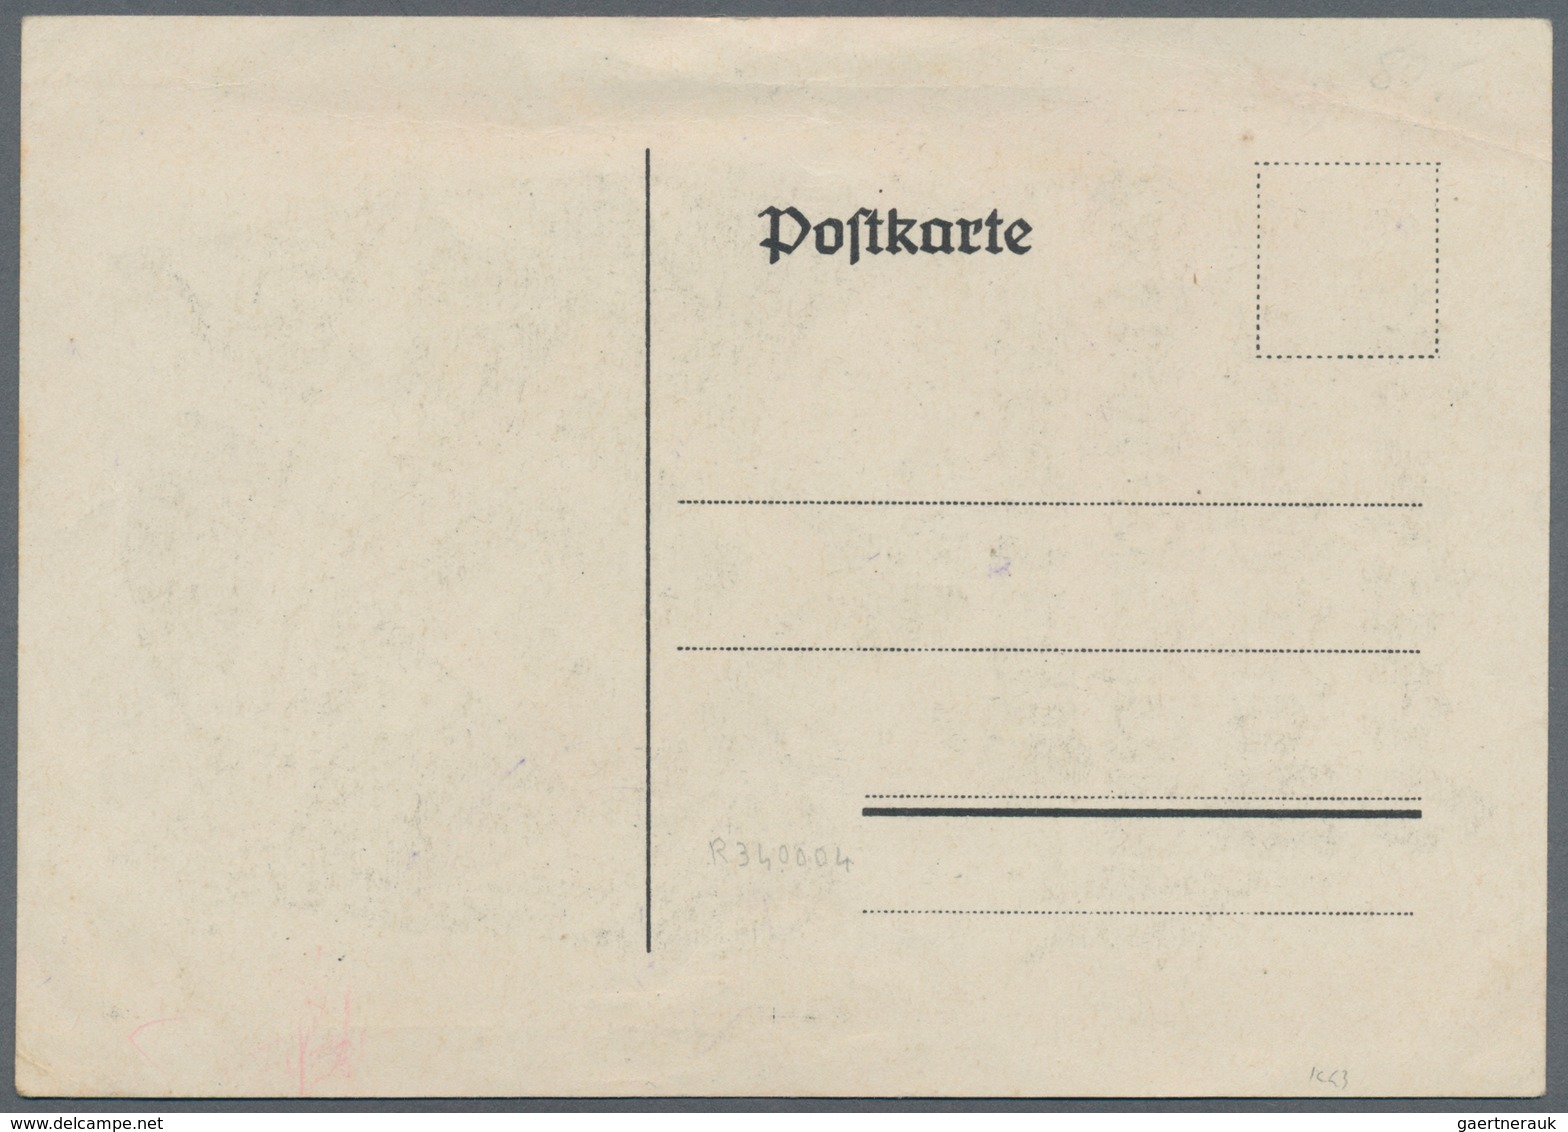 Ansichtskarten: Propaganda: 1925. Deutsche Völkische Reichstagung Elberfeld 18 -21 Juni 1925 / Germa - Parteien & Wahlen